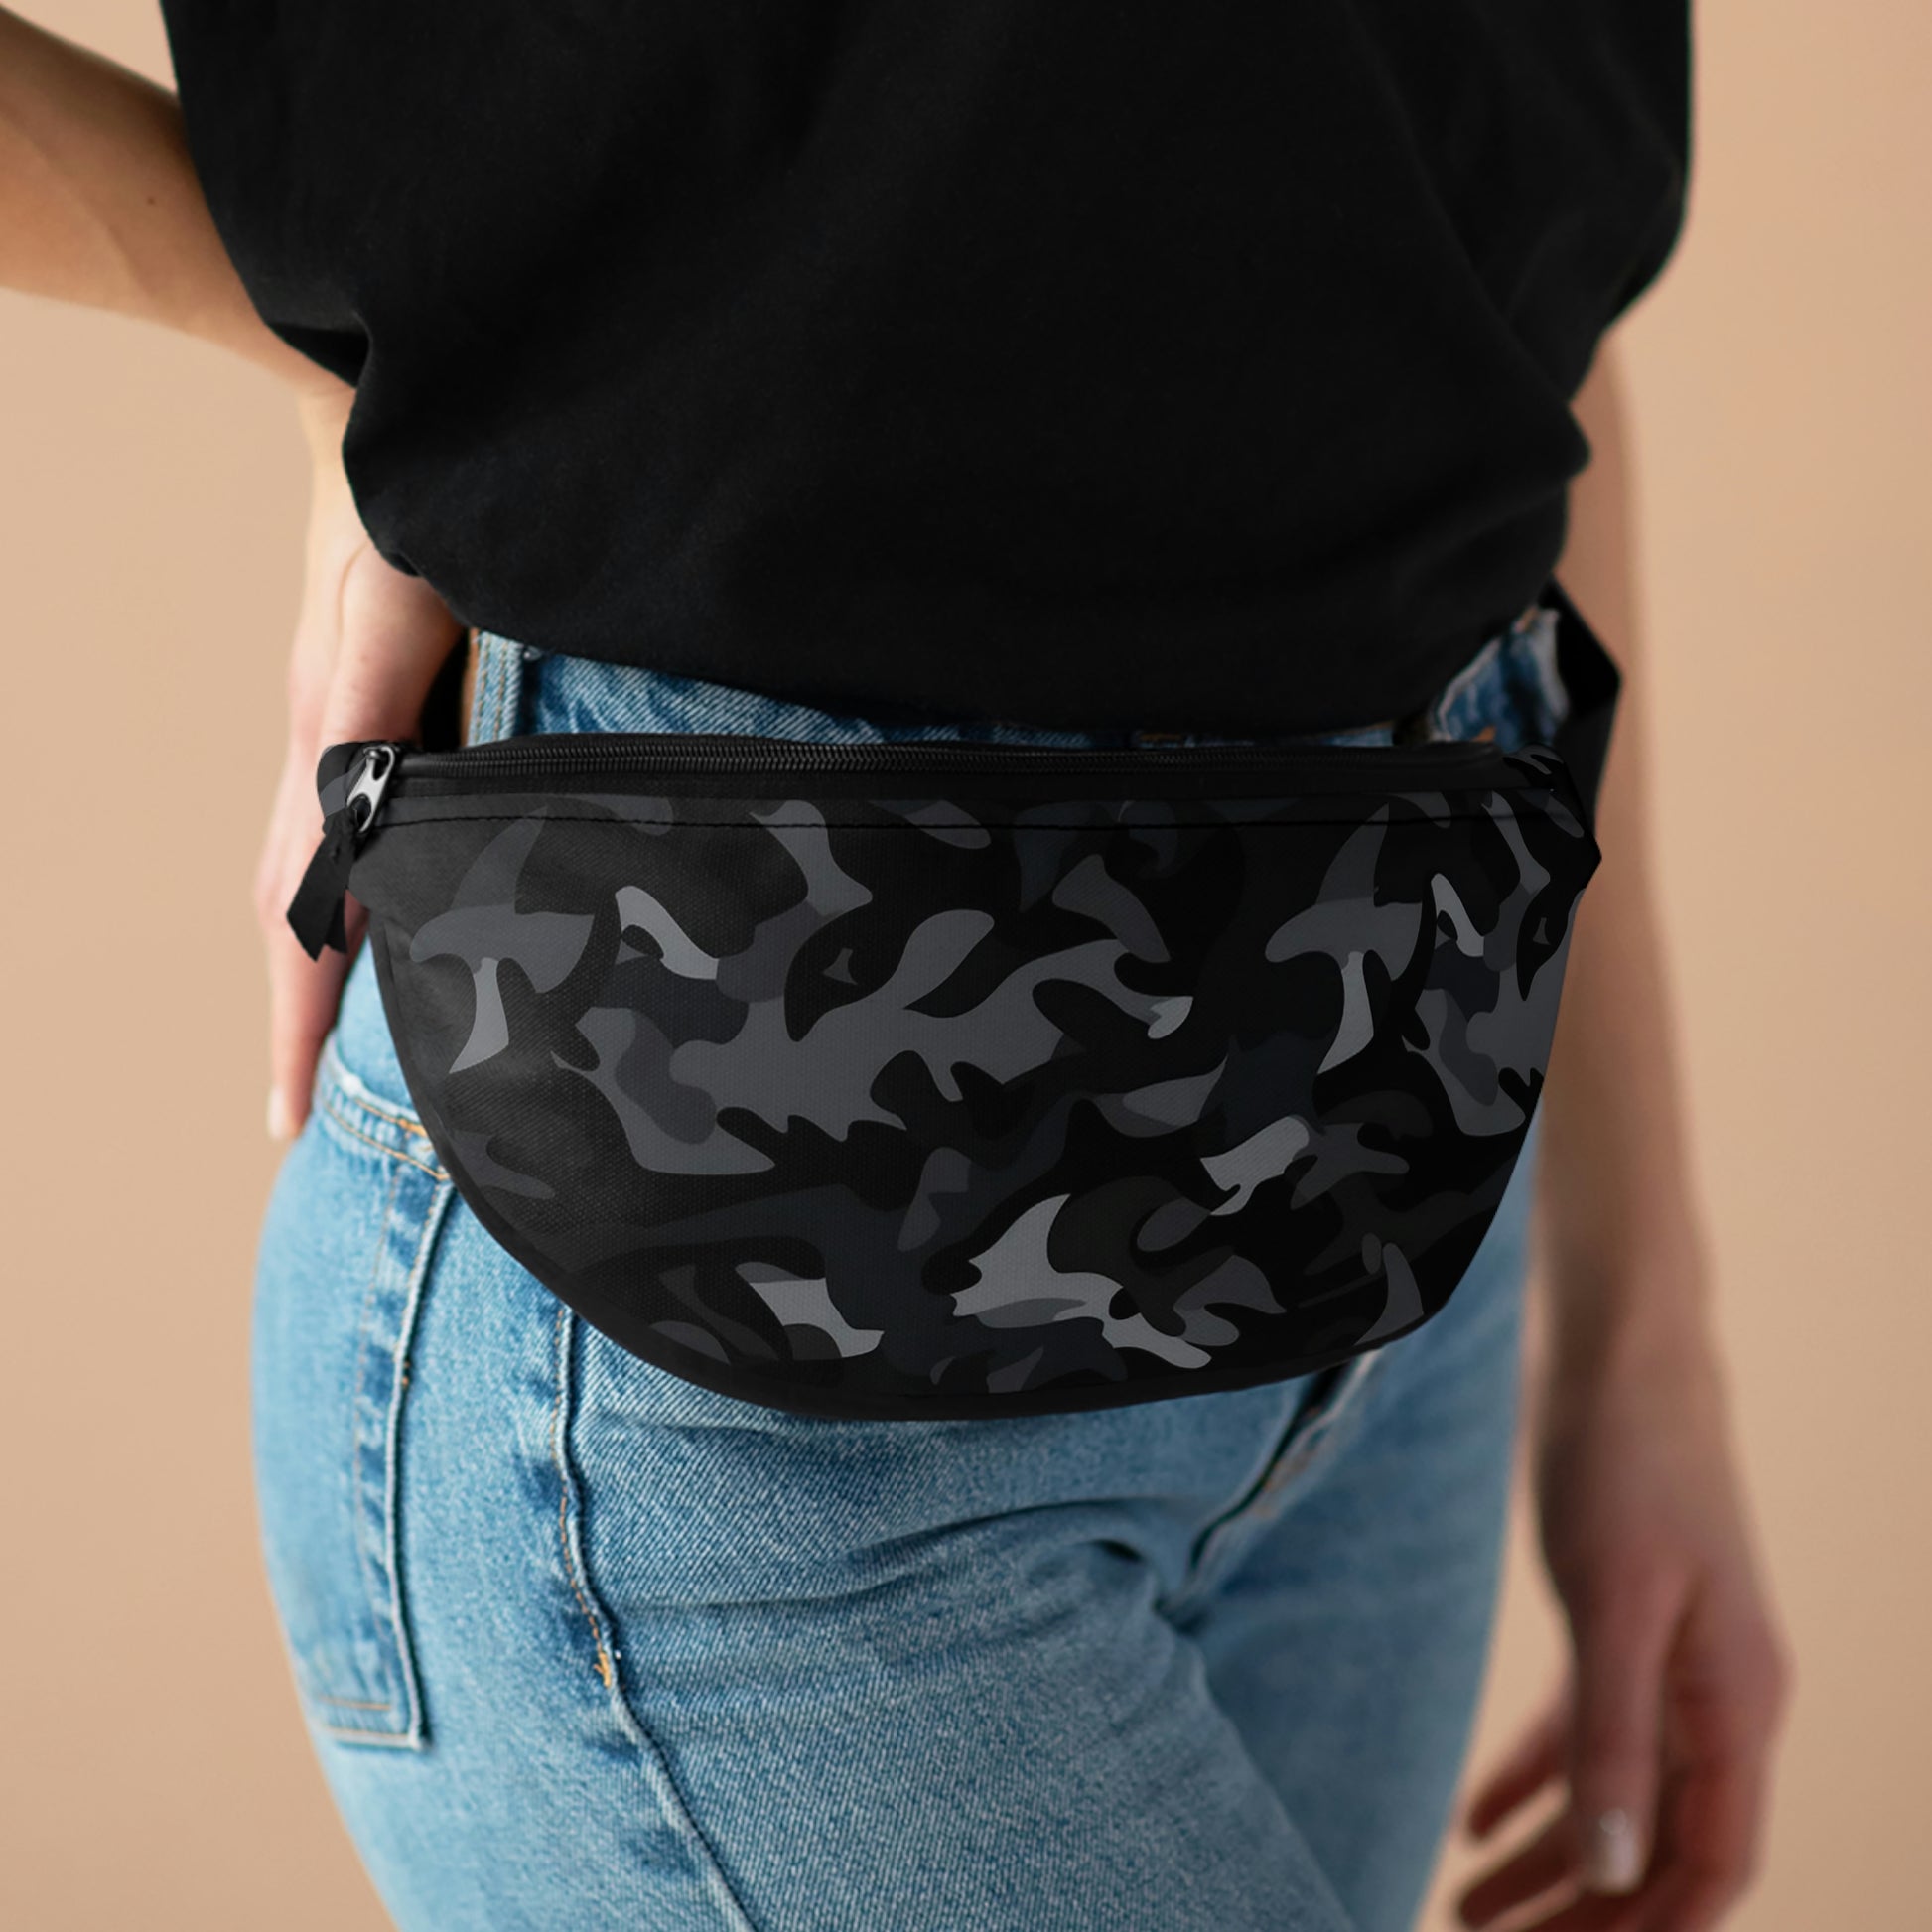 Men's Designer Belt Bags - Men's Designer Fanny Packs